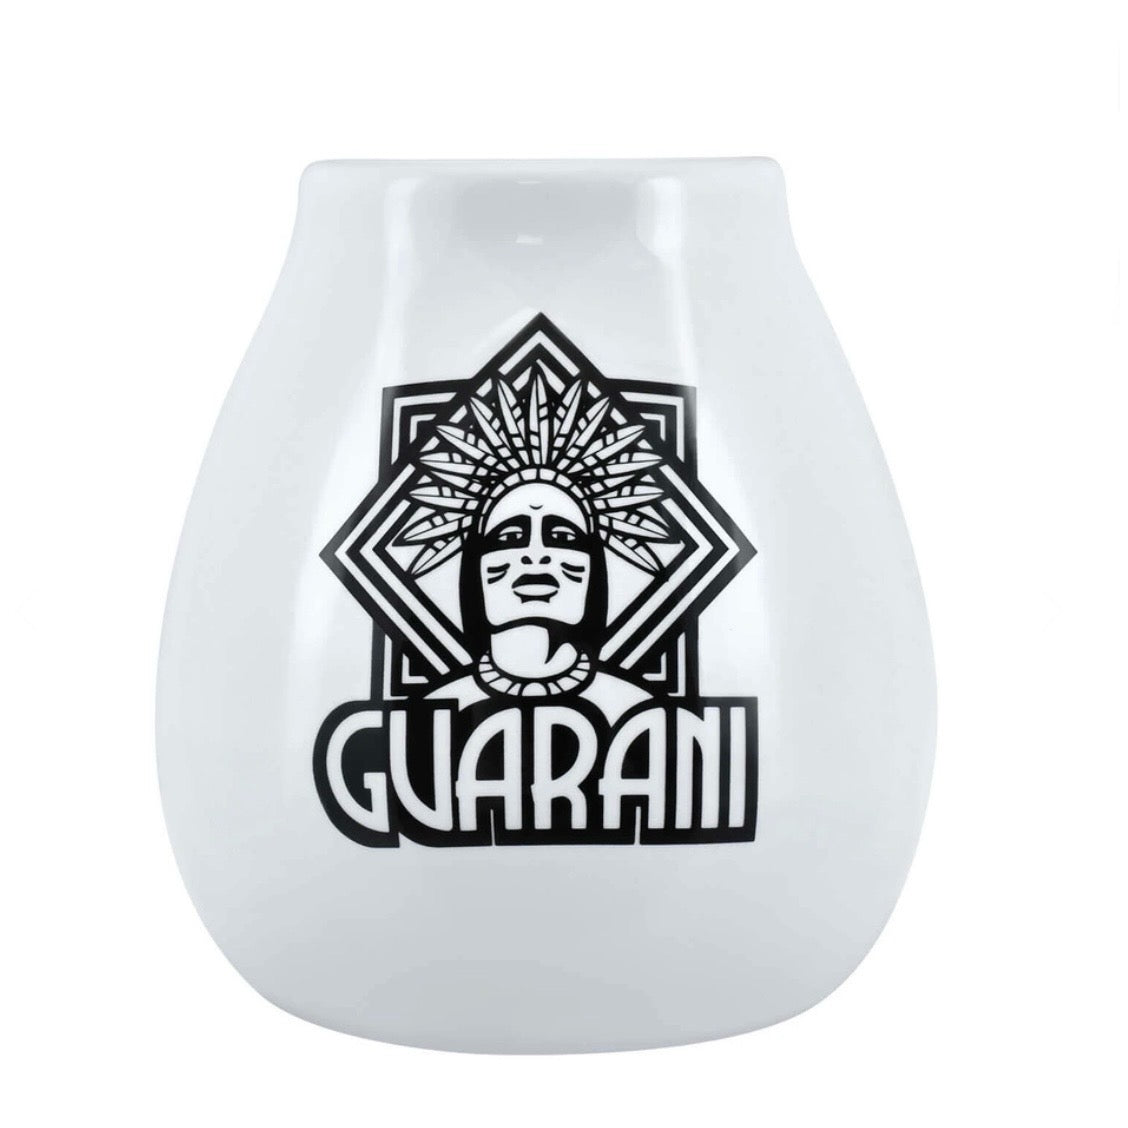 Guarani Mate Calabaza in ceramica - Coppa per Yerba Mate bianca 350ml